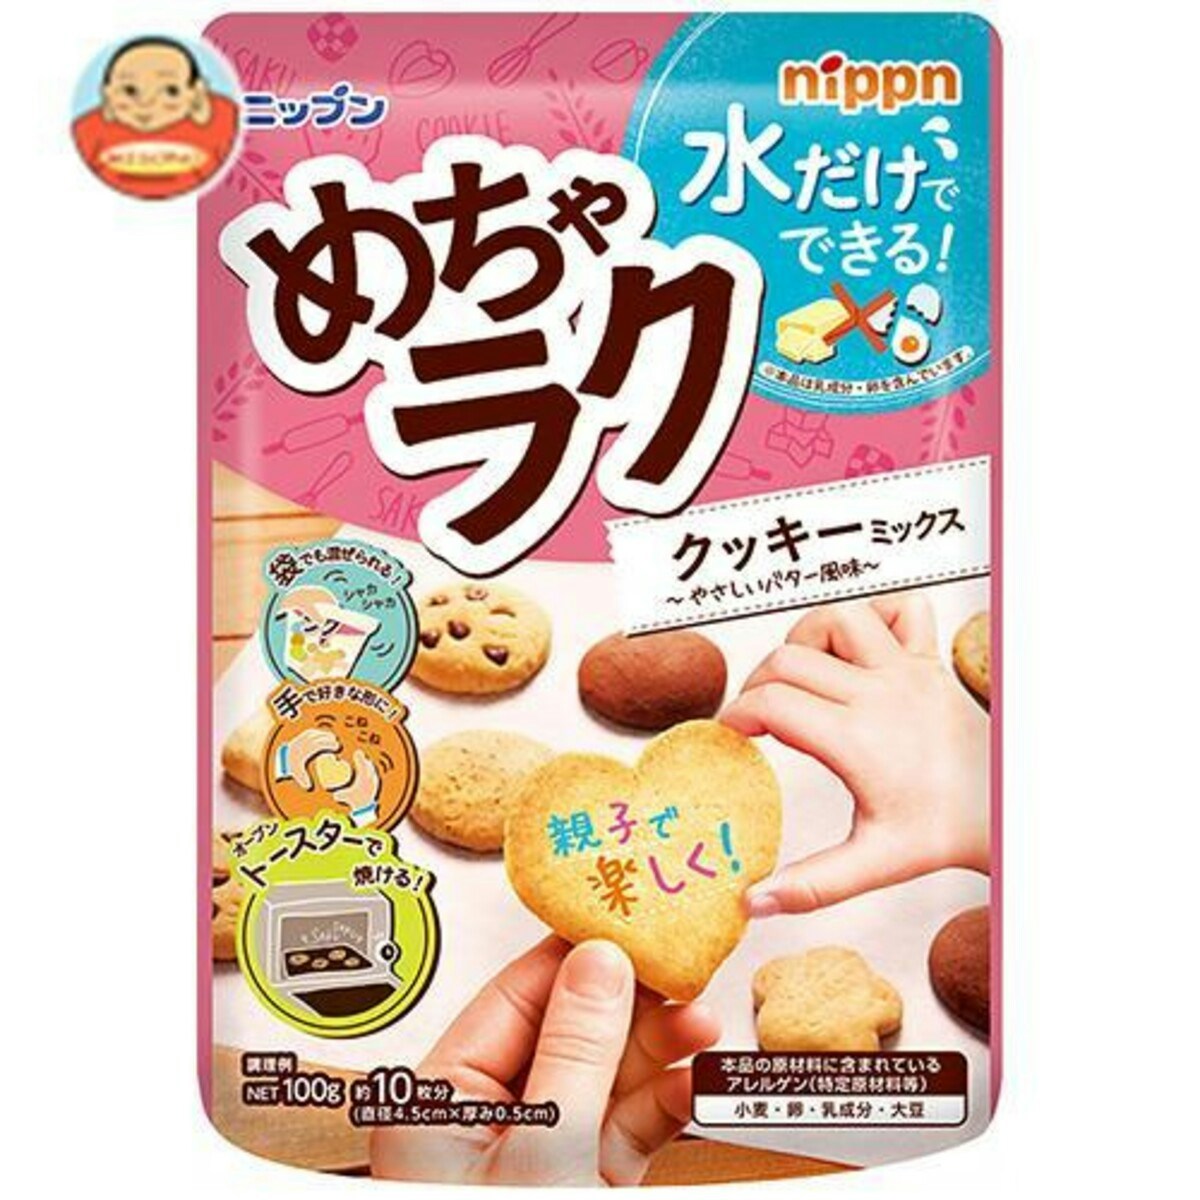 日本製粉 ニップン めちゃラク クッキーミックス 100g×16袋入